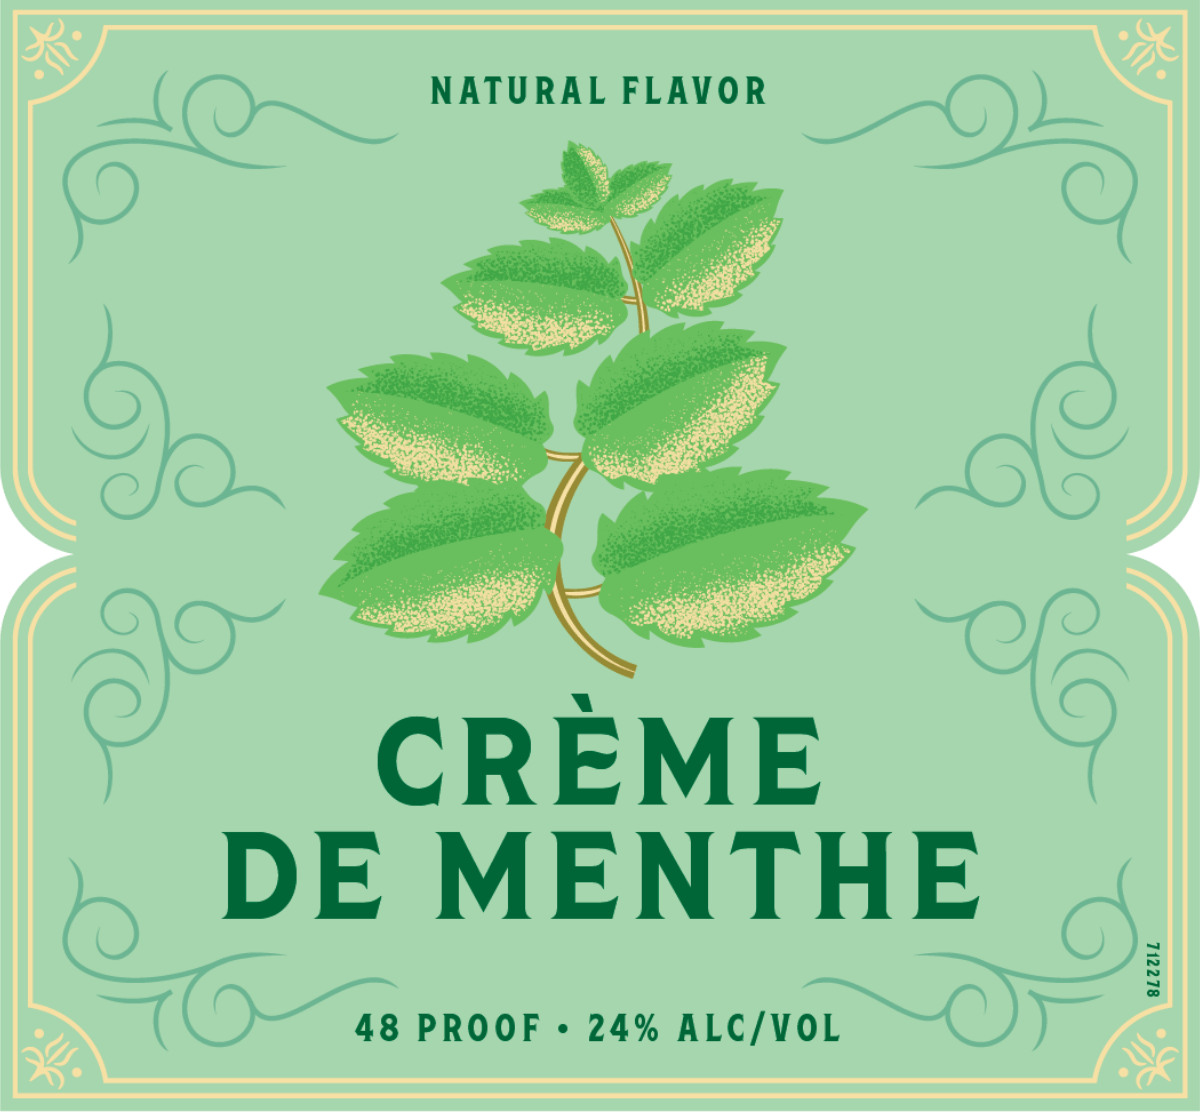 LEROUX® Green Crème de Menthe